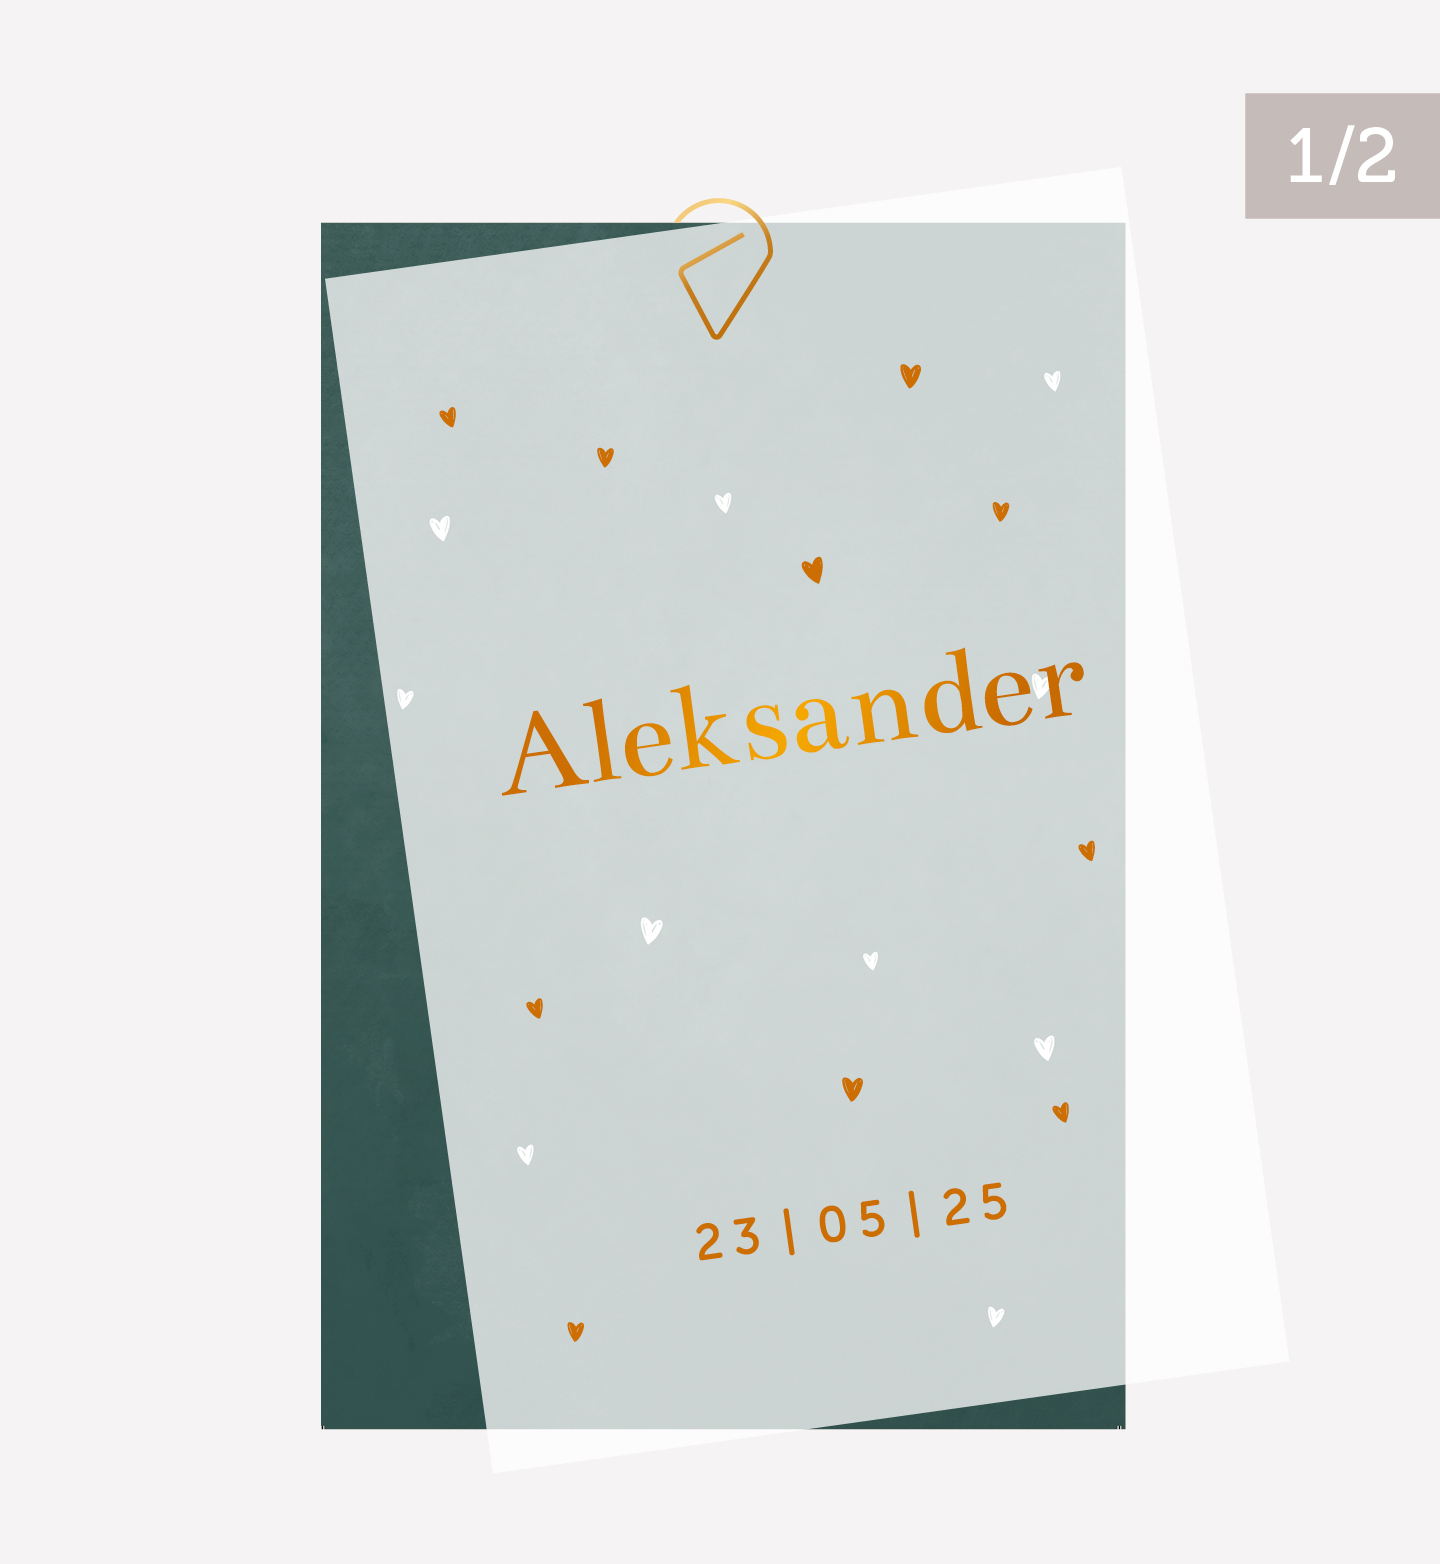 kalkpapier voorkant geboortekaartje Aleksander met hartjes